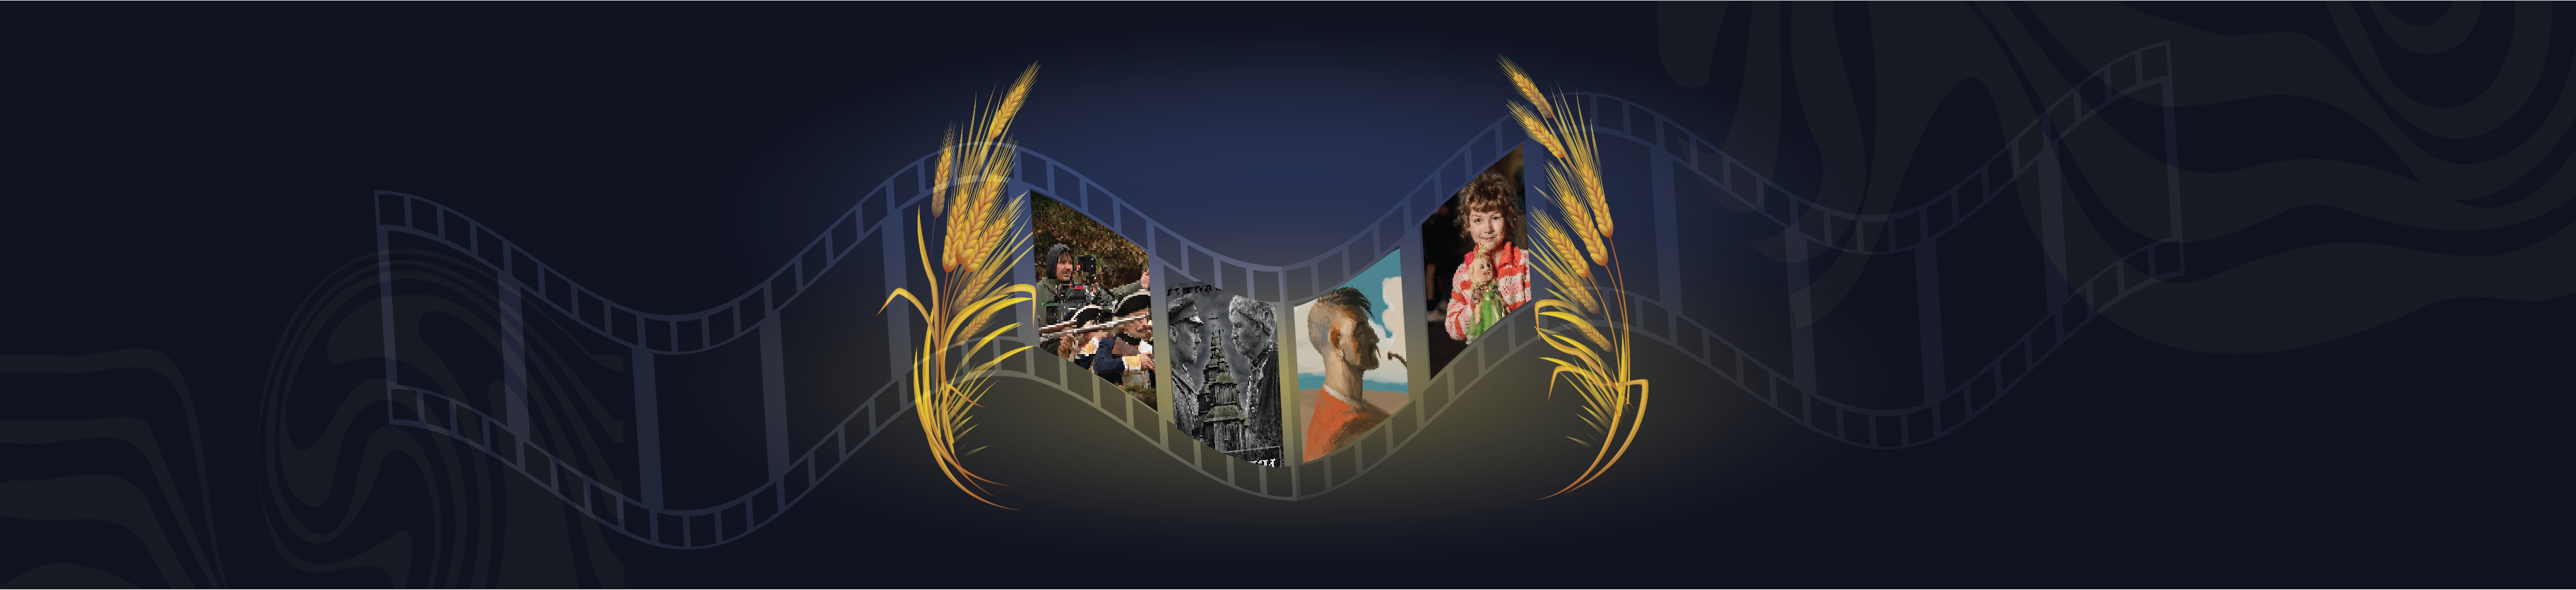 New Ukrainian Film Festival Banner